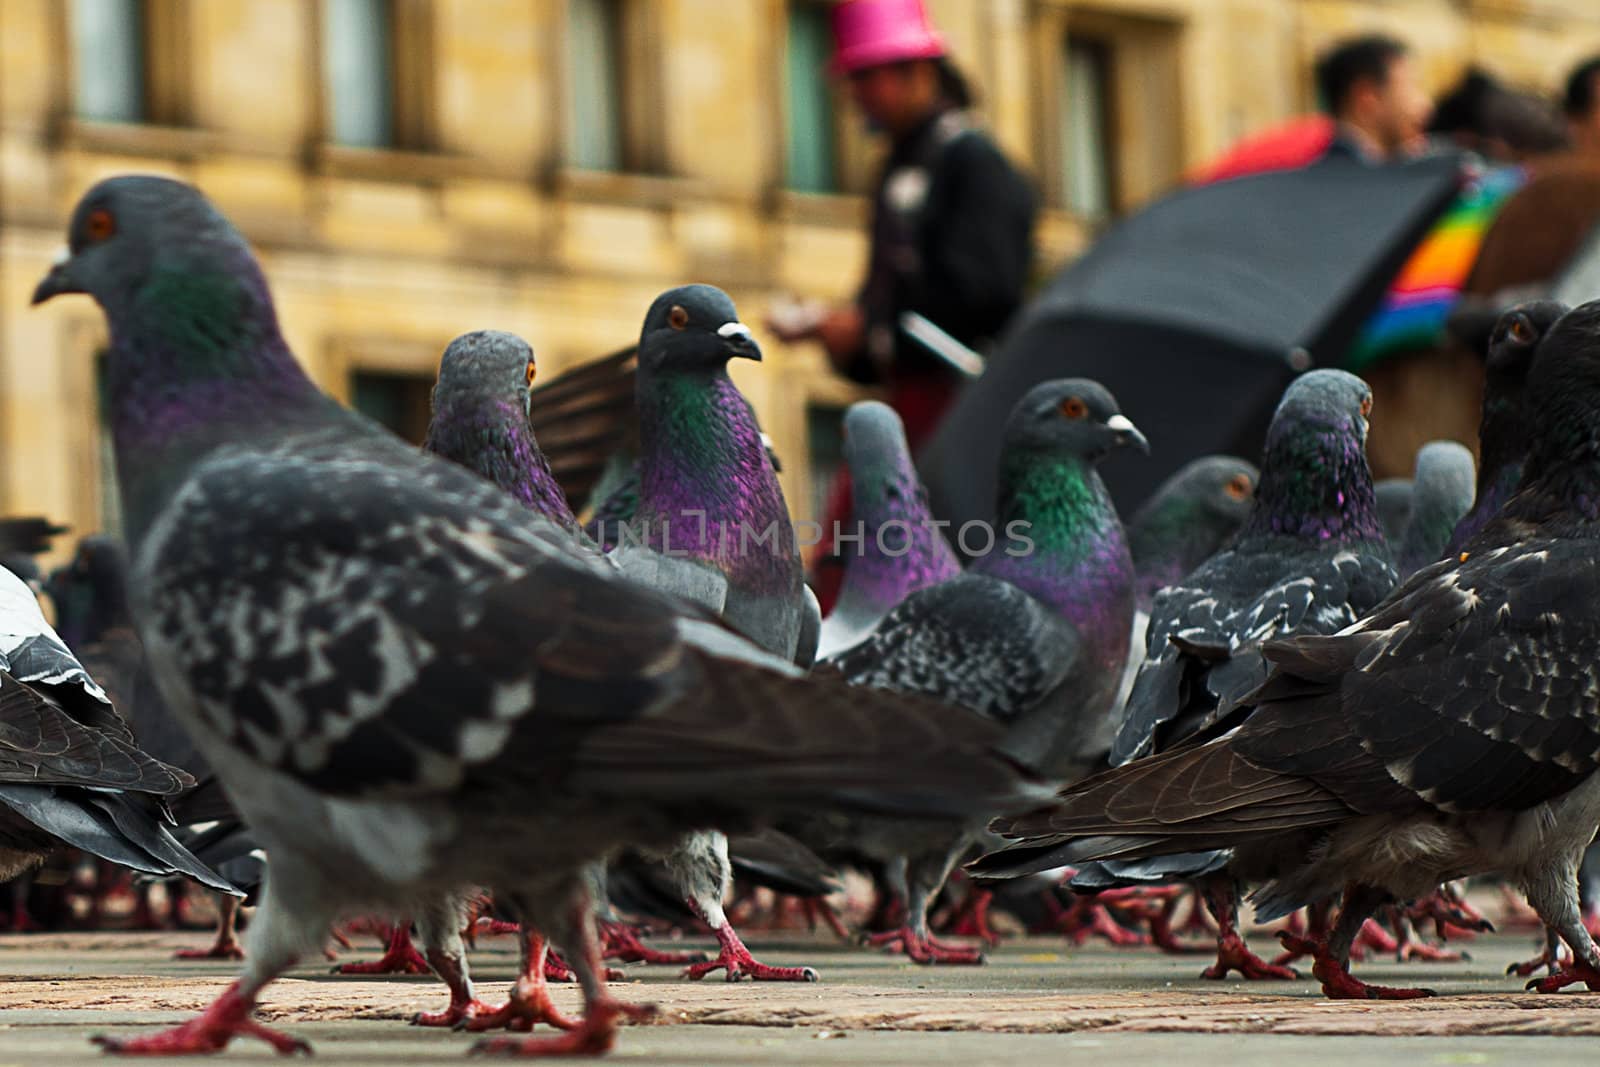 Pigeons by jkraft5